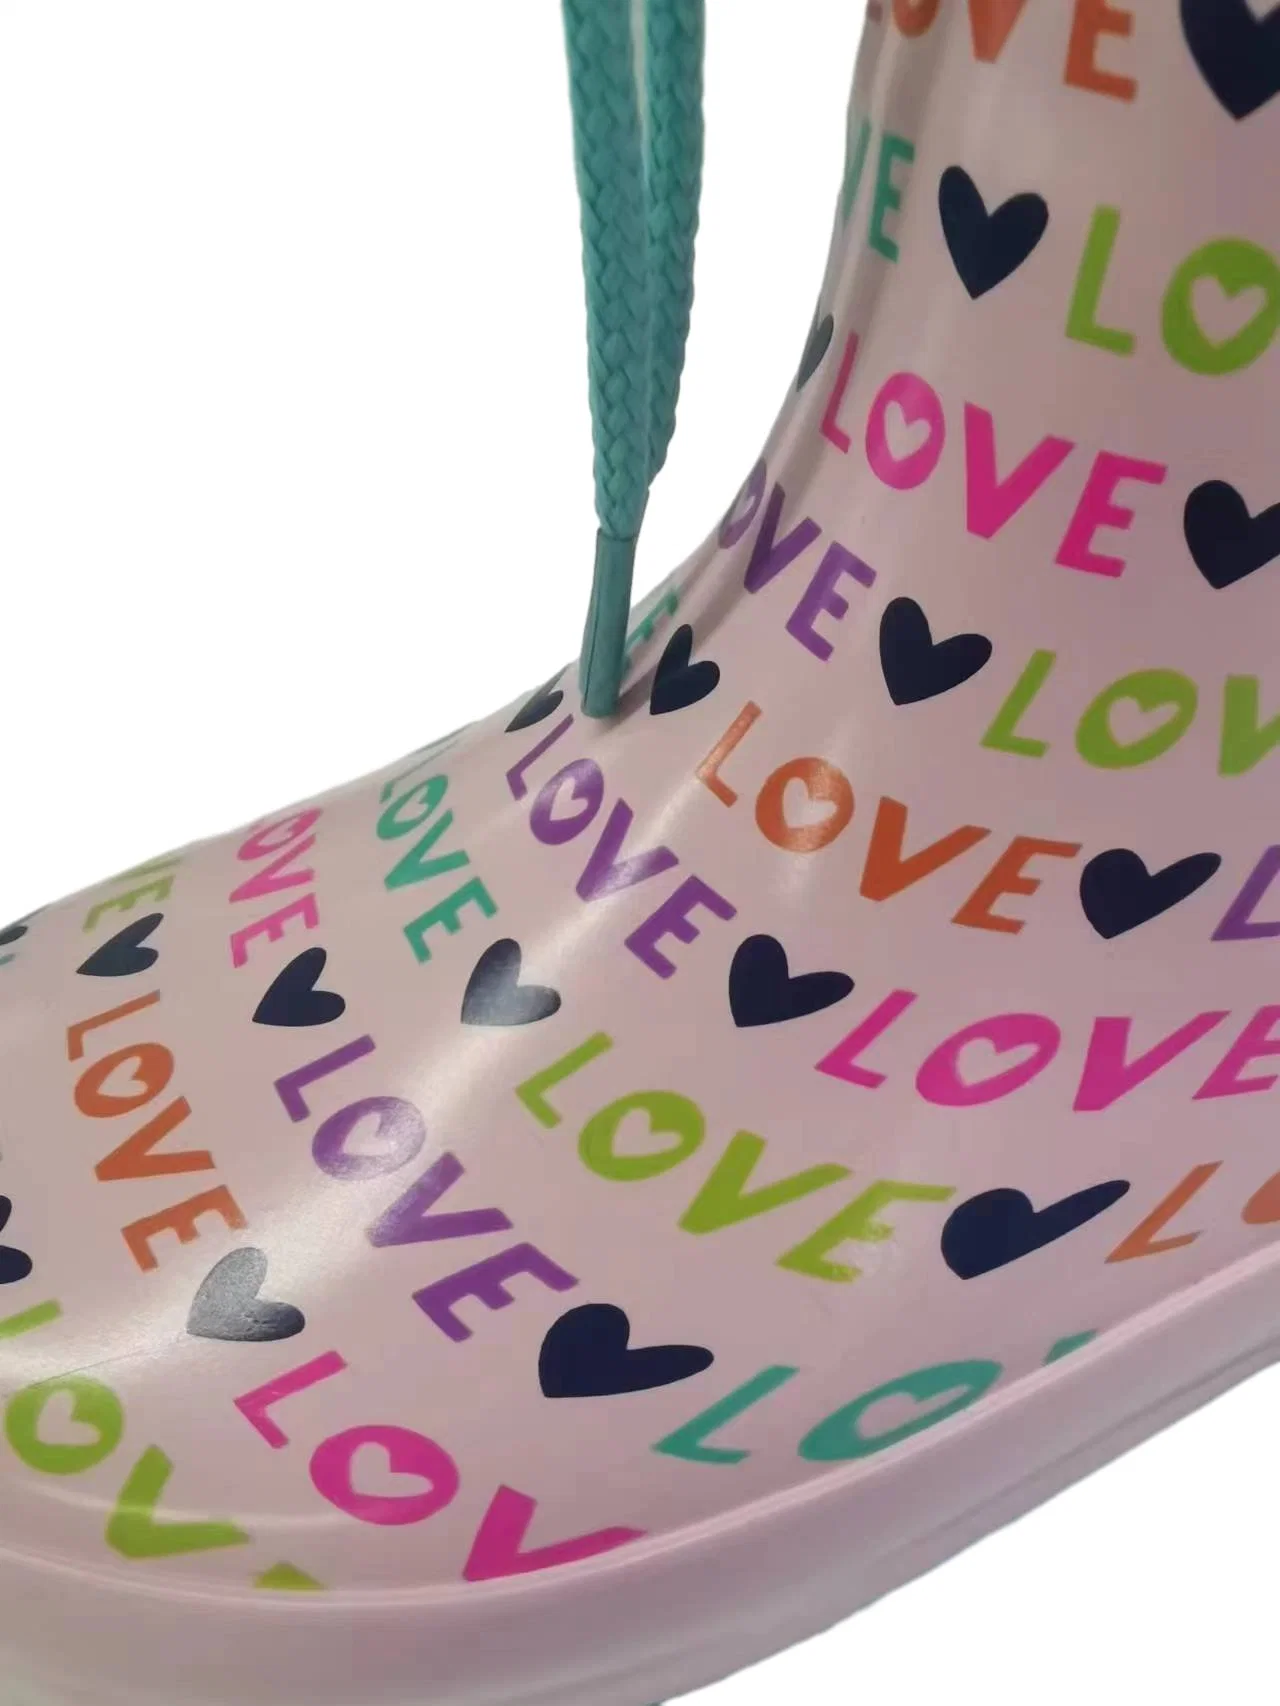 Bottes de pluie en caoutchouc imperméables pour enfants avec impression de cœur de lettre d'amour.